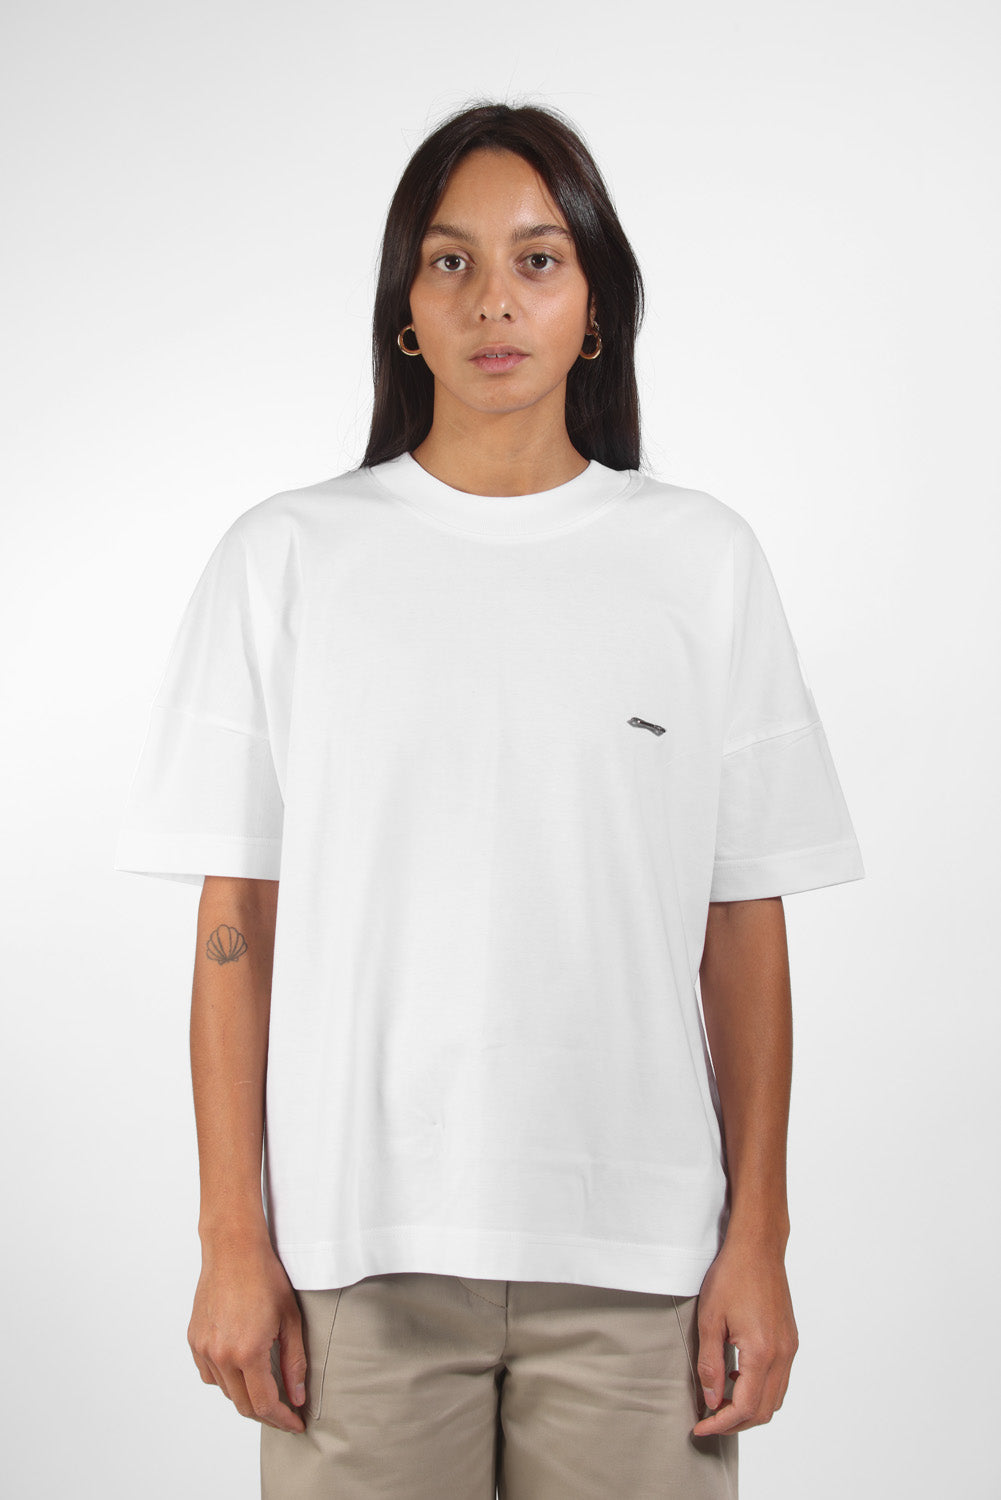 T-shirt Charly blanc imprimé